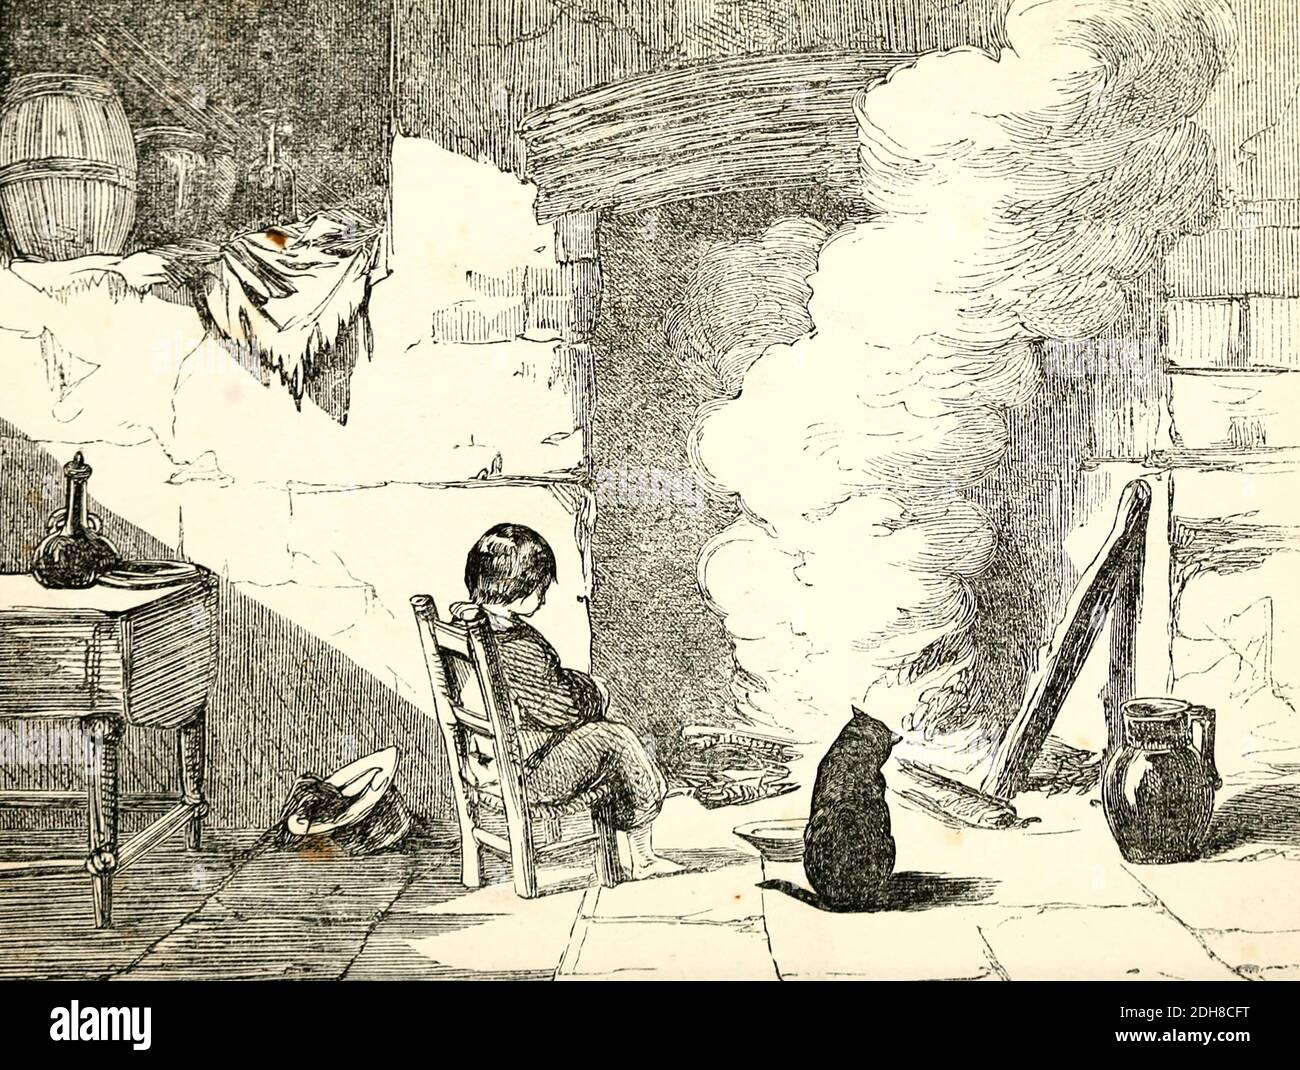 Una favola dal libro "favola" di Forrester, Alfred Henry, 1804-1872 [Alfred Henry Forrester (10 settembre 1804 – 26 maggio 1872) è stato un autore inglese, comico, illustratore e artista, conosciuto anche sotto lo pseudonimo di Alfred Crowquill. Foto Stock